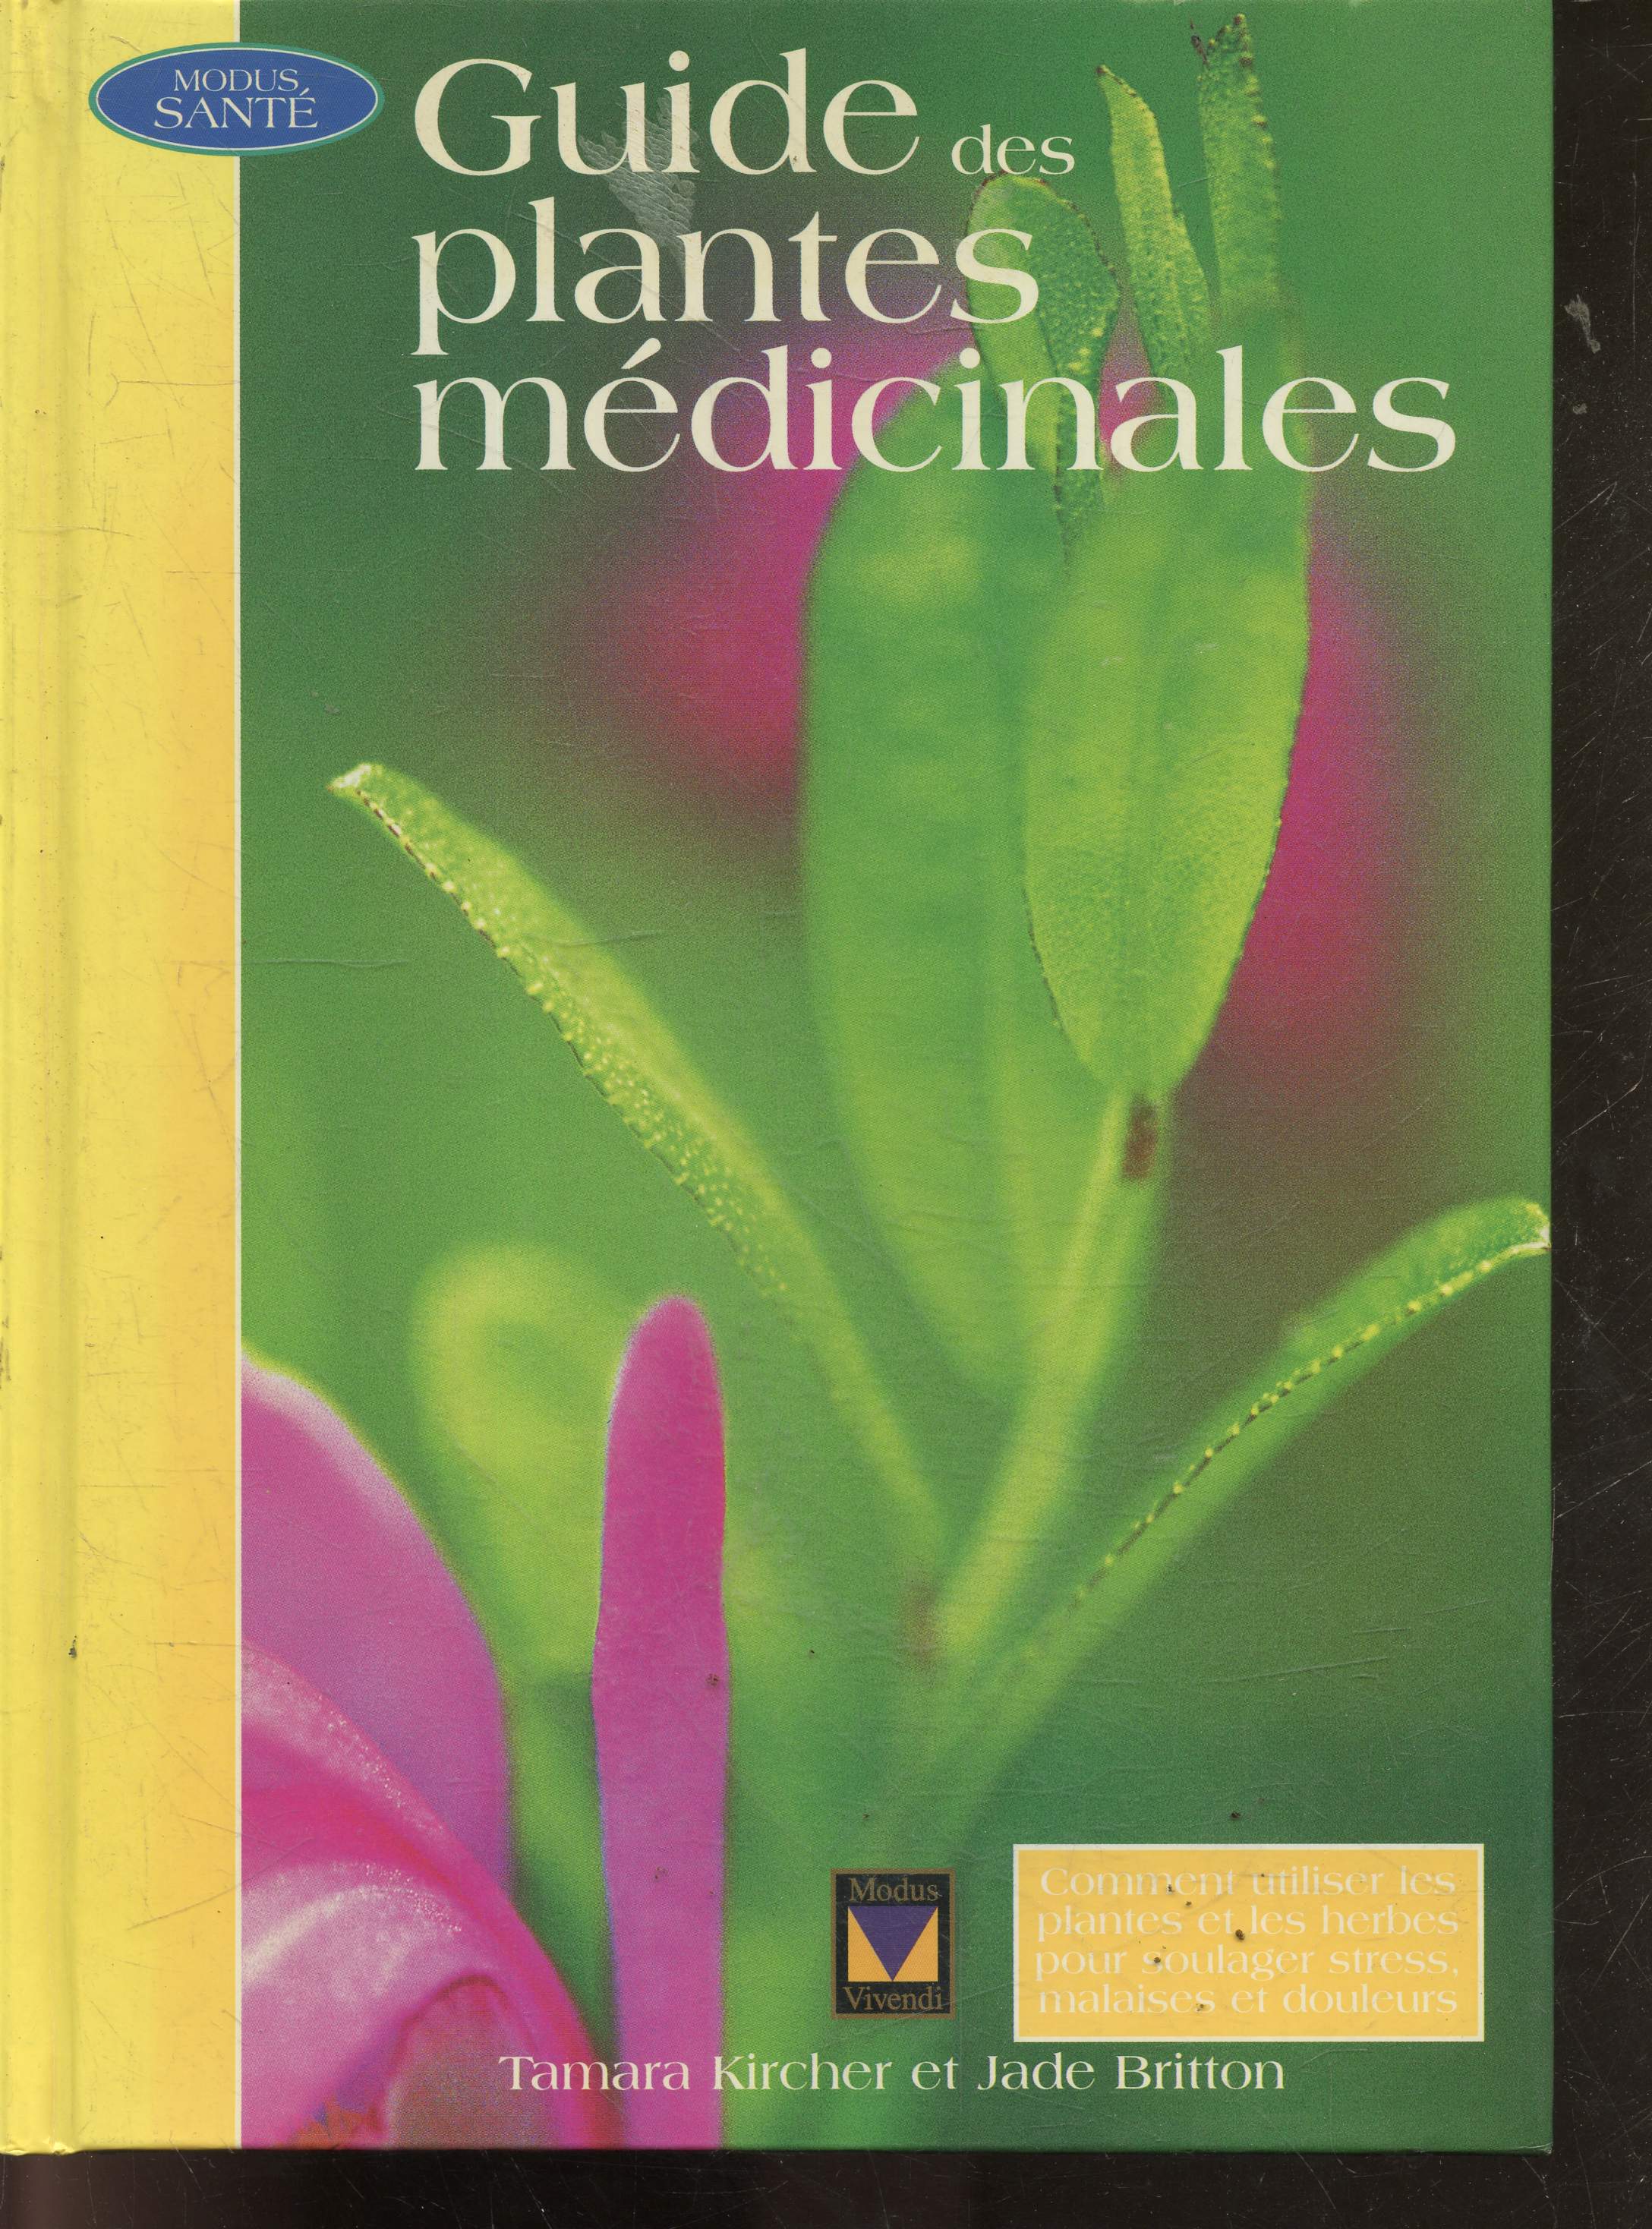 Guide des plantes mdicinales - guide complet des traitements a base de plantes pour le soulagement de la tension, du stress, de la douleur et des maladies